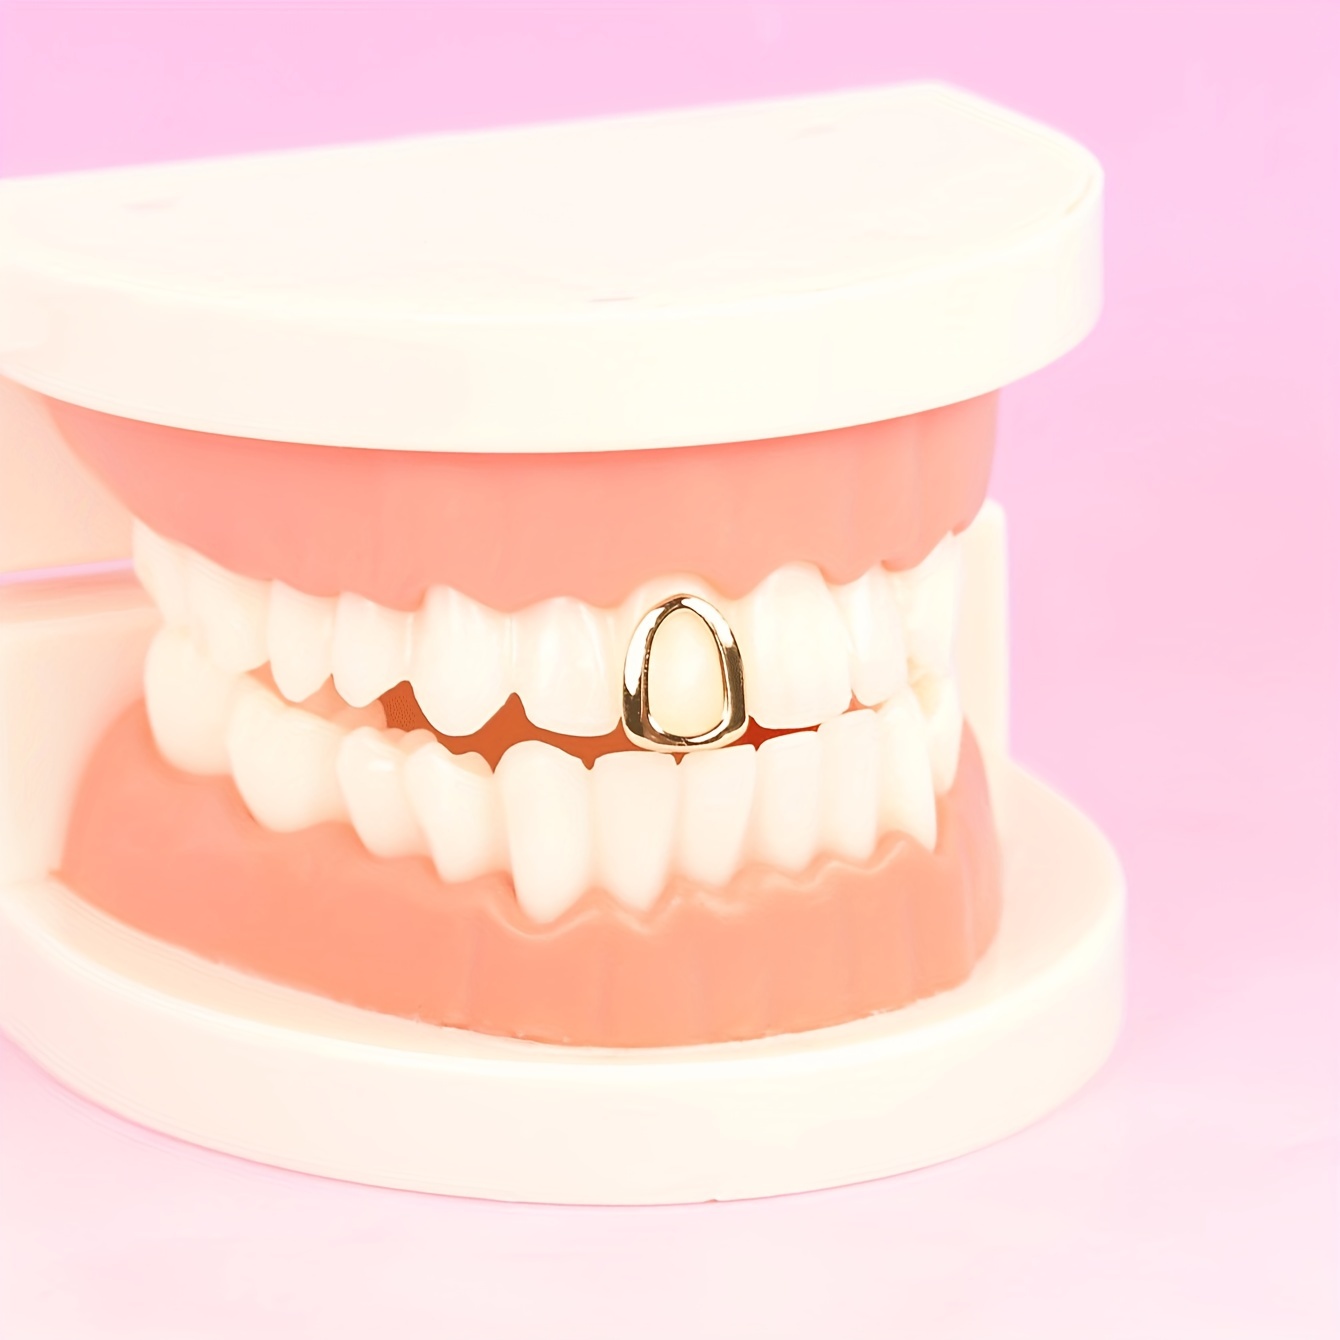 Des bijoux de dents posés sur un dentier, la tendance improbable qui buzze  